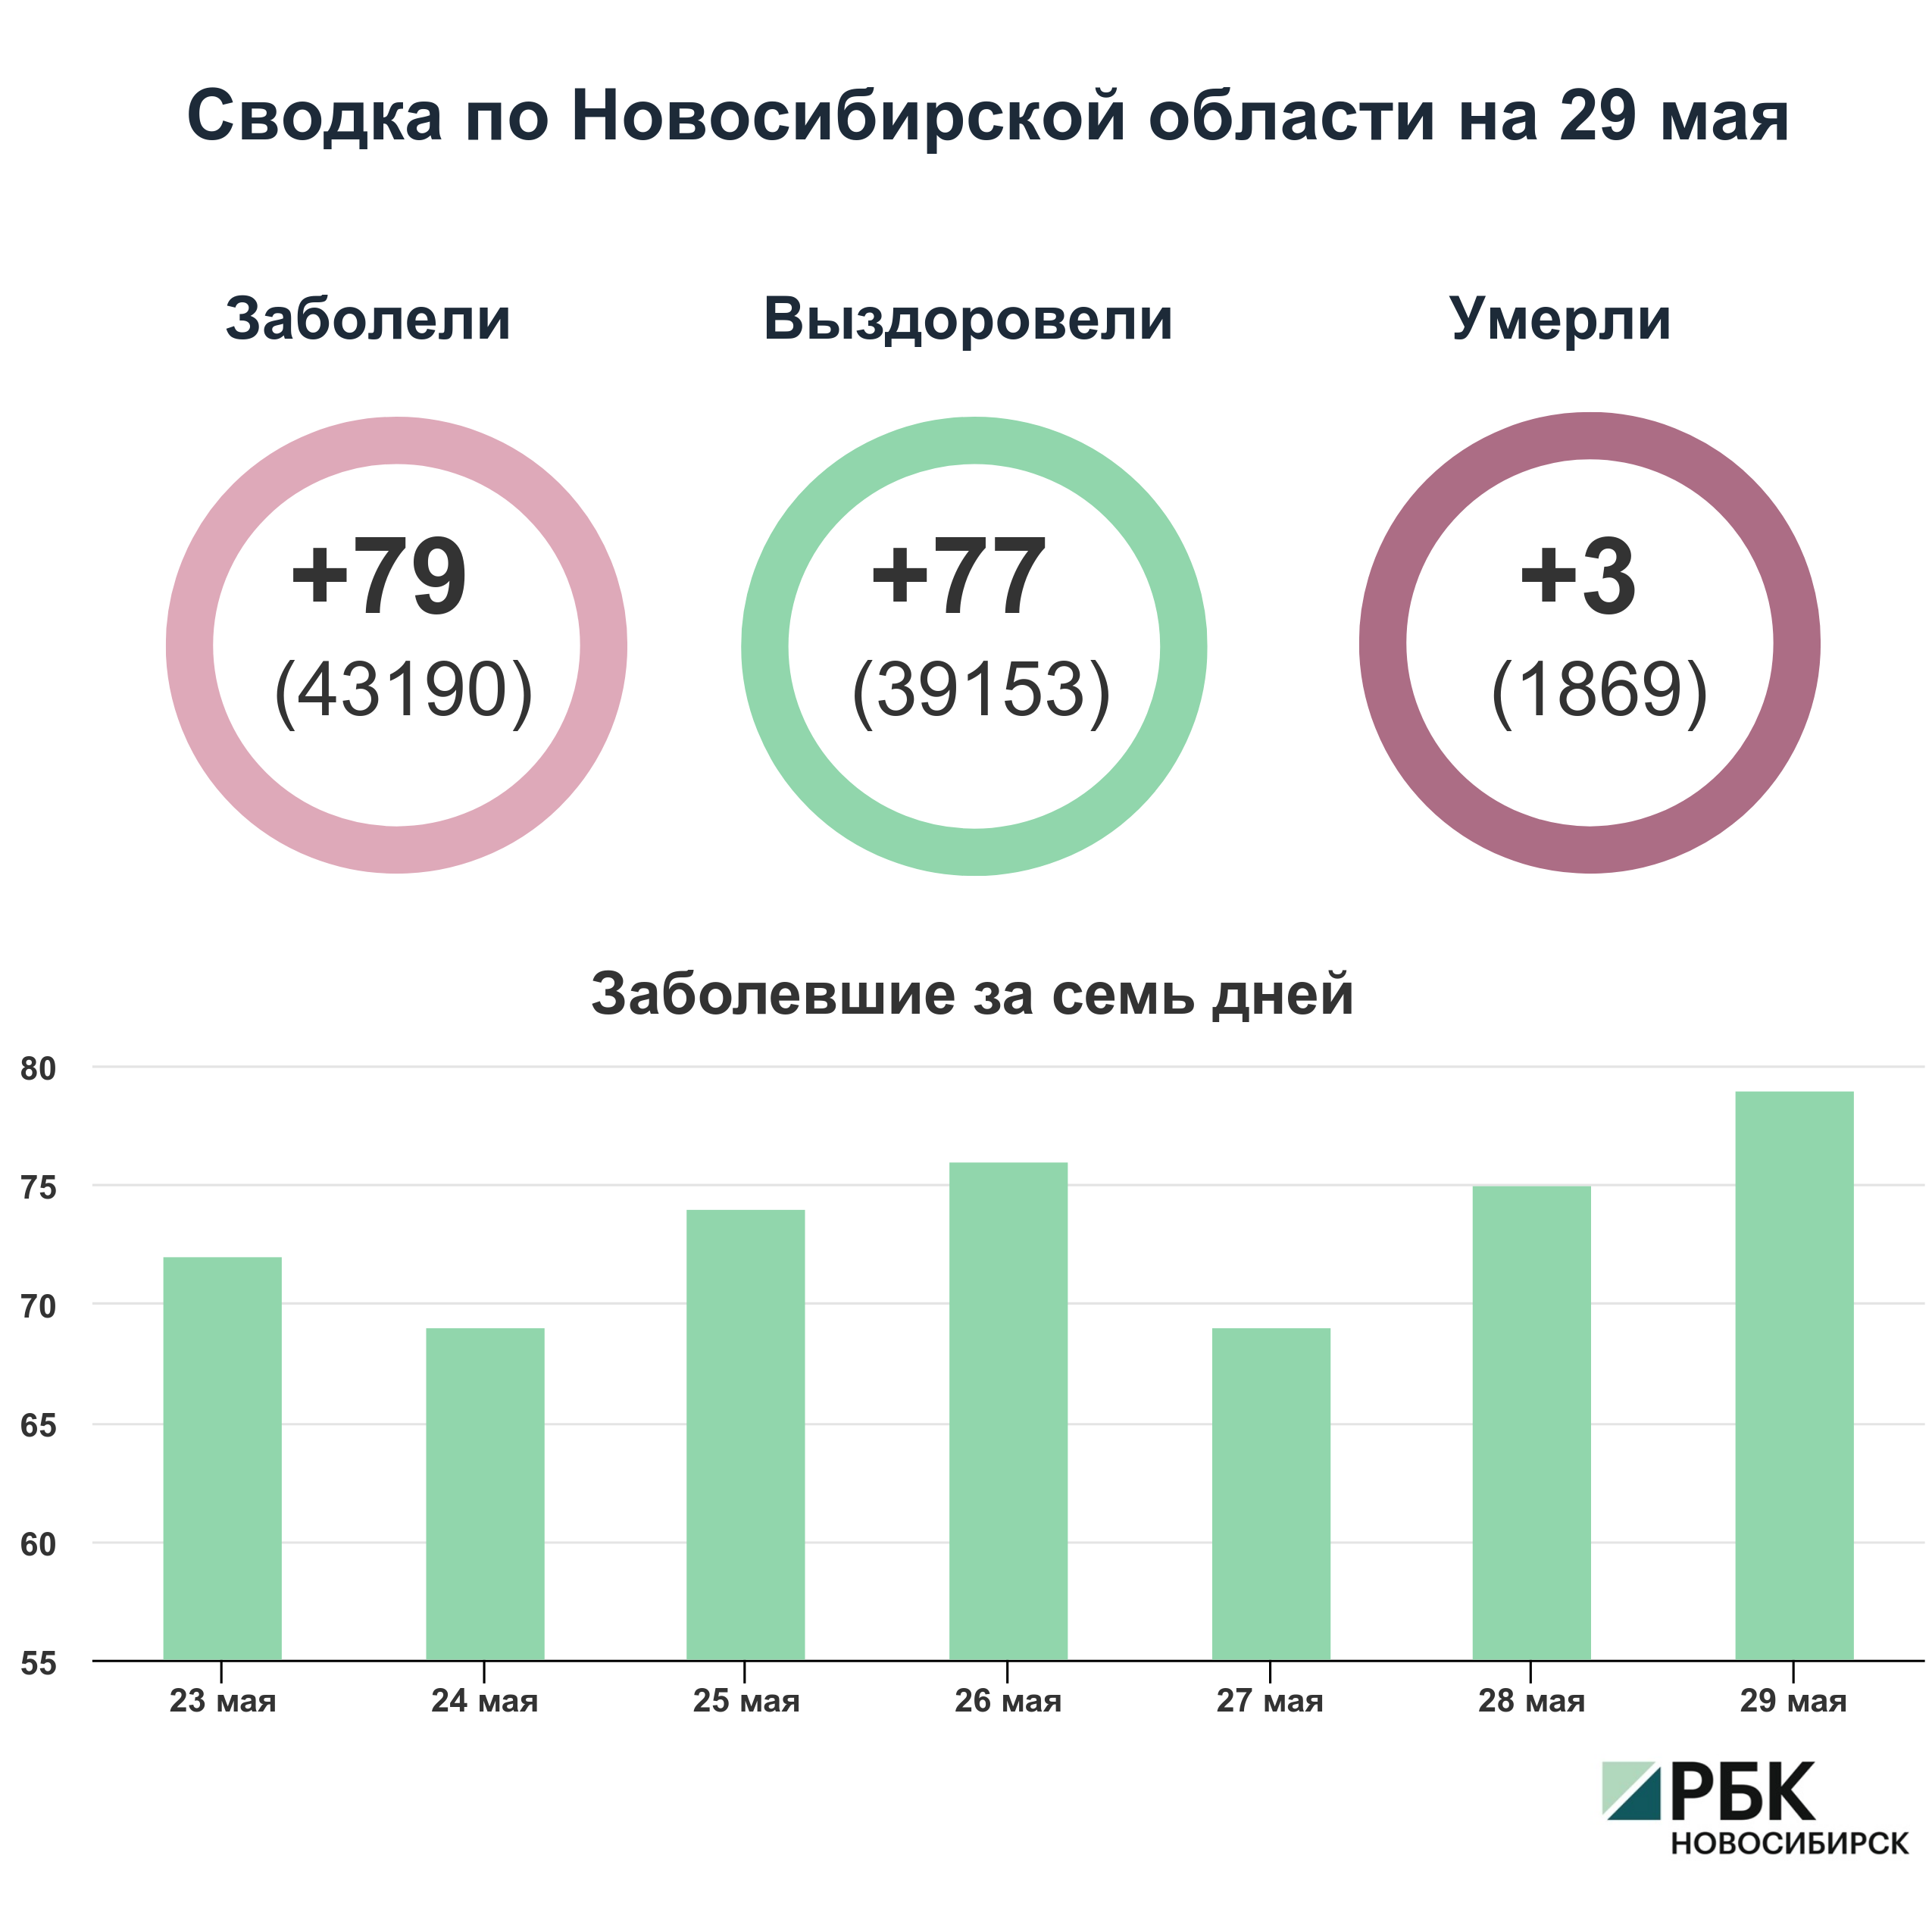 Коронавирус в Новосибирске: сводка на 29 мая